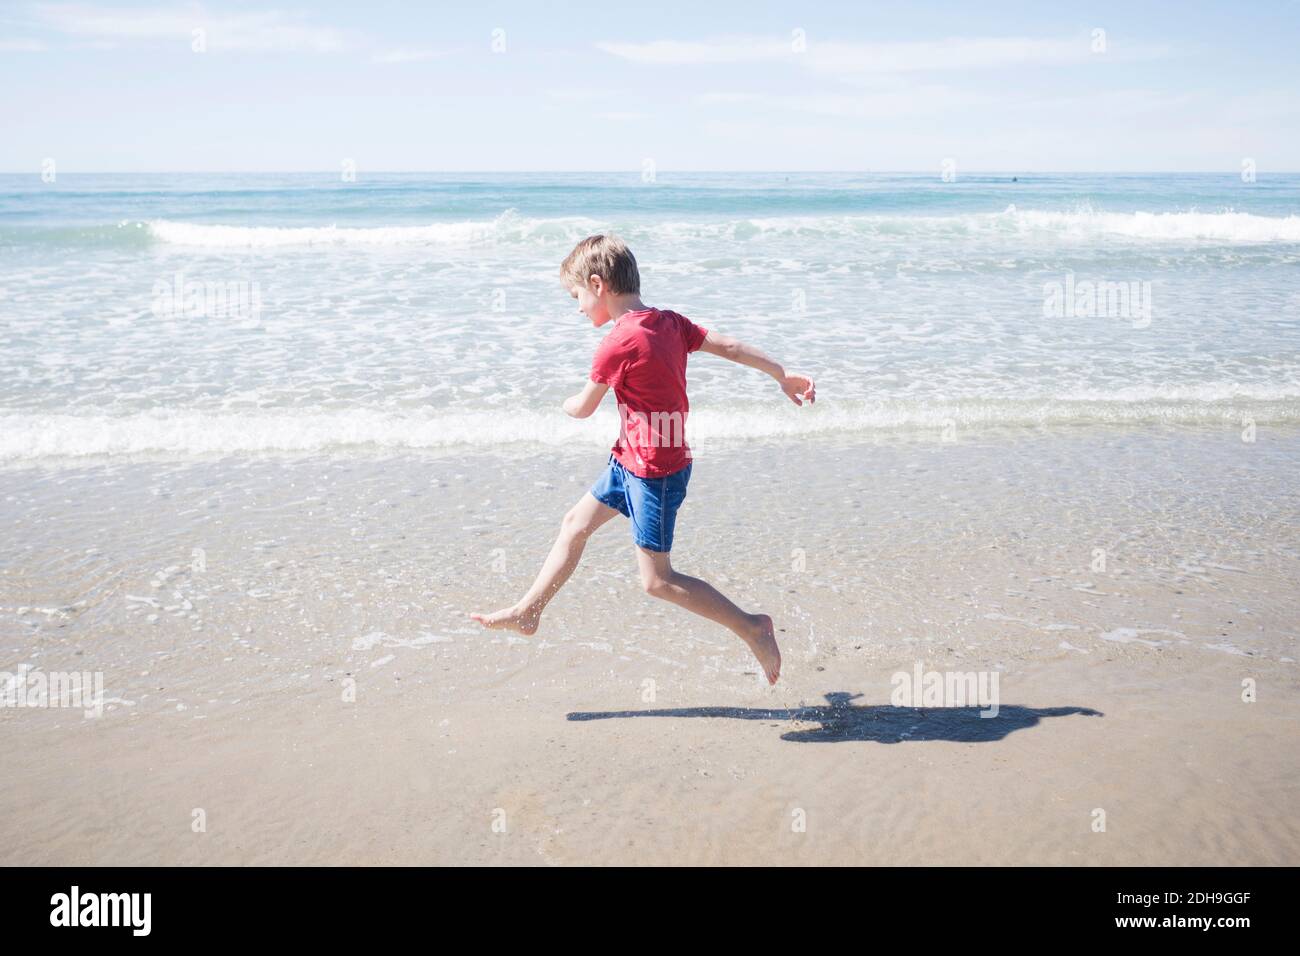 Volle Länge Seitenansicht des Jungen am Strand laufen Sonniger Tag Stockfoto